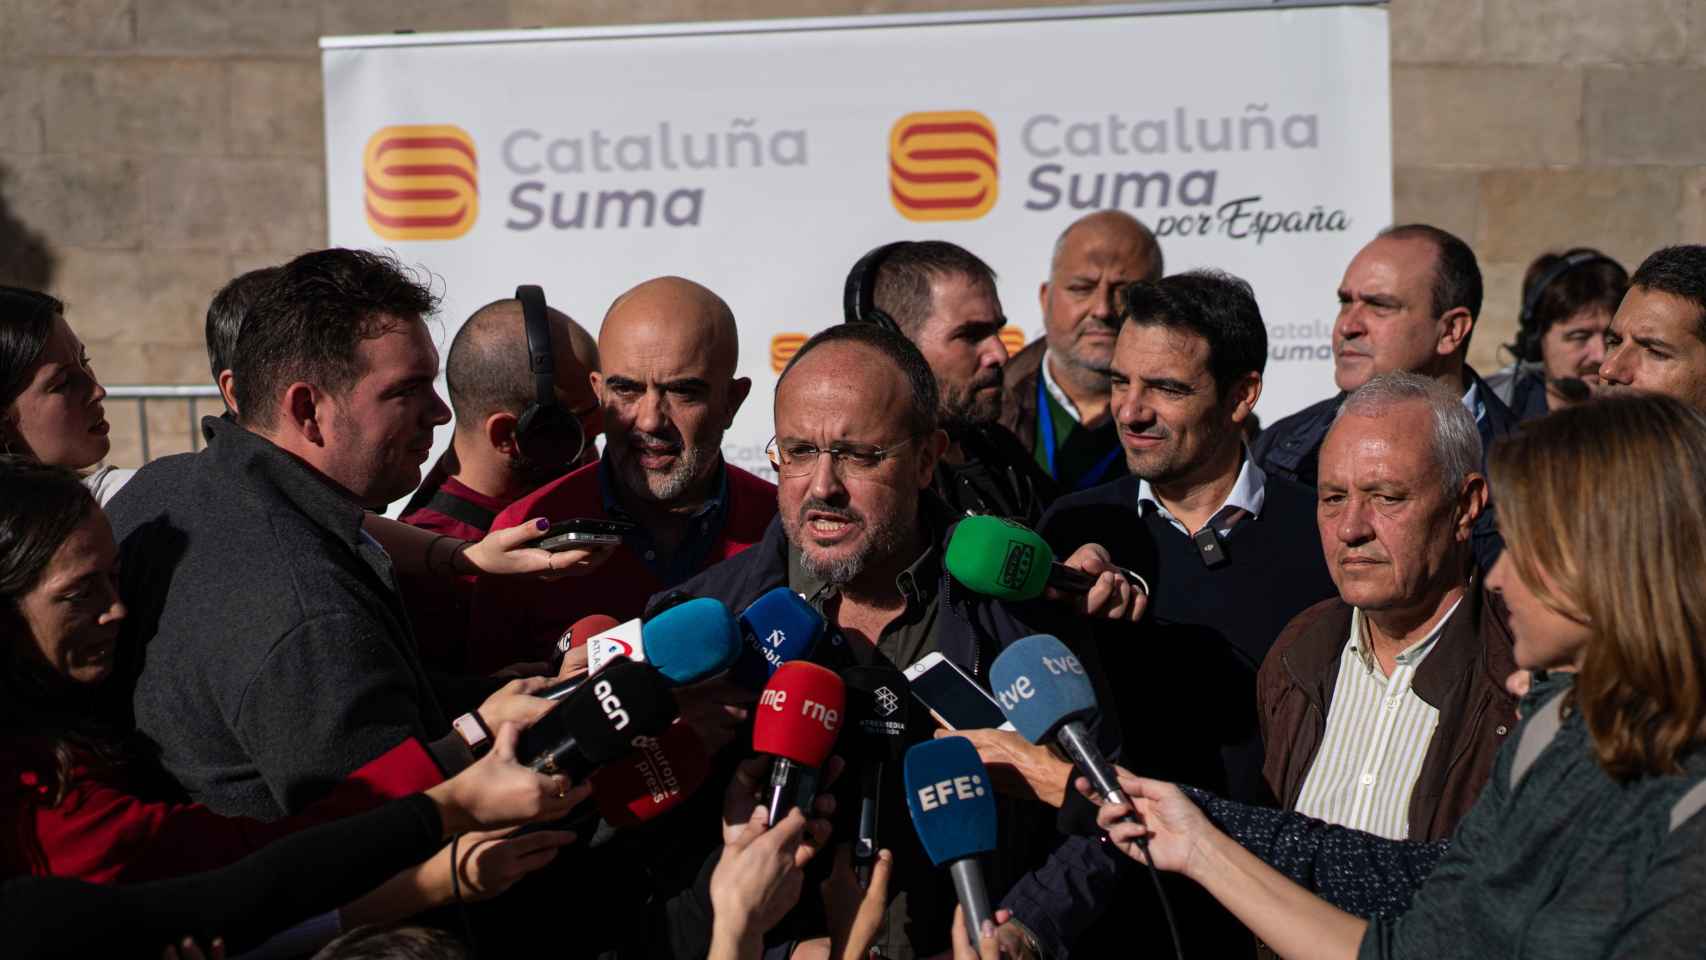 La plana mayor del PP catalán, con su presidente, Alejandro Fernández, al frente, en la protesta contra la amnistía en Barcelona